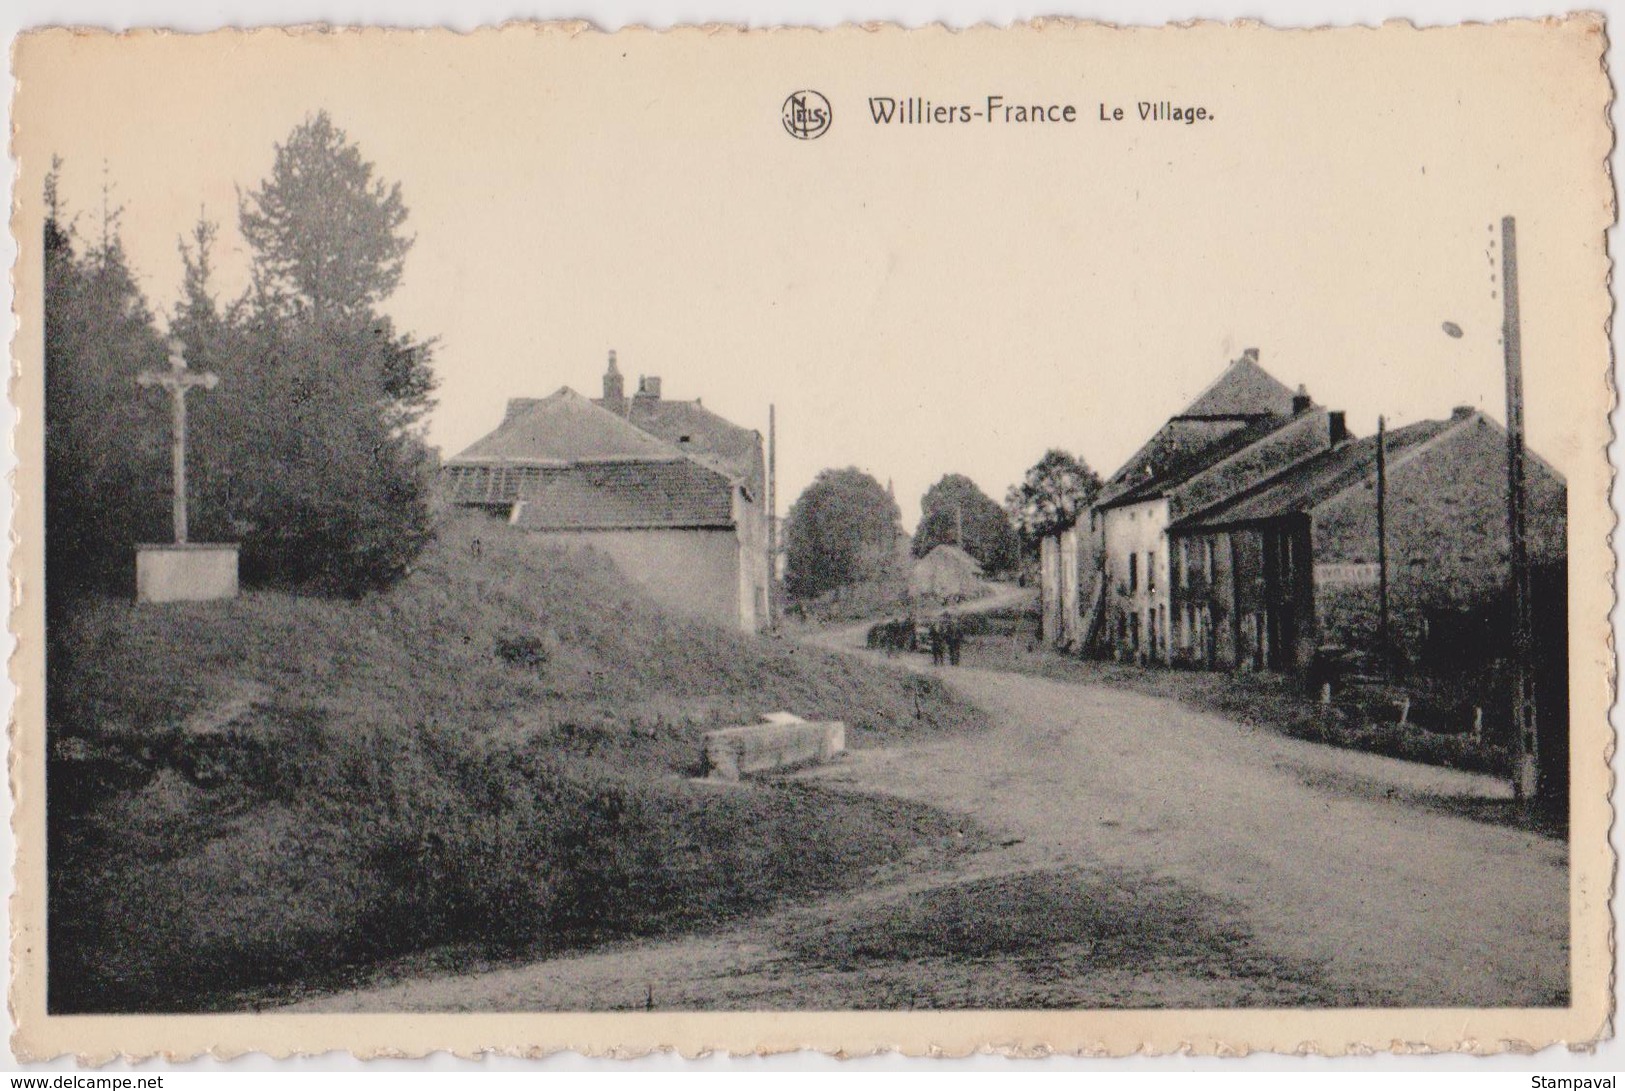 WILLIERS-FRANCE - LE VILLAGE - Sedan